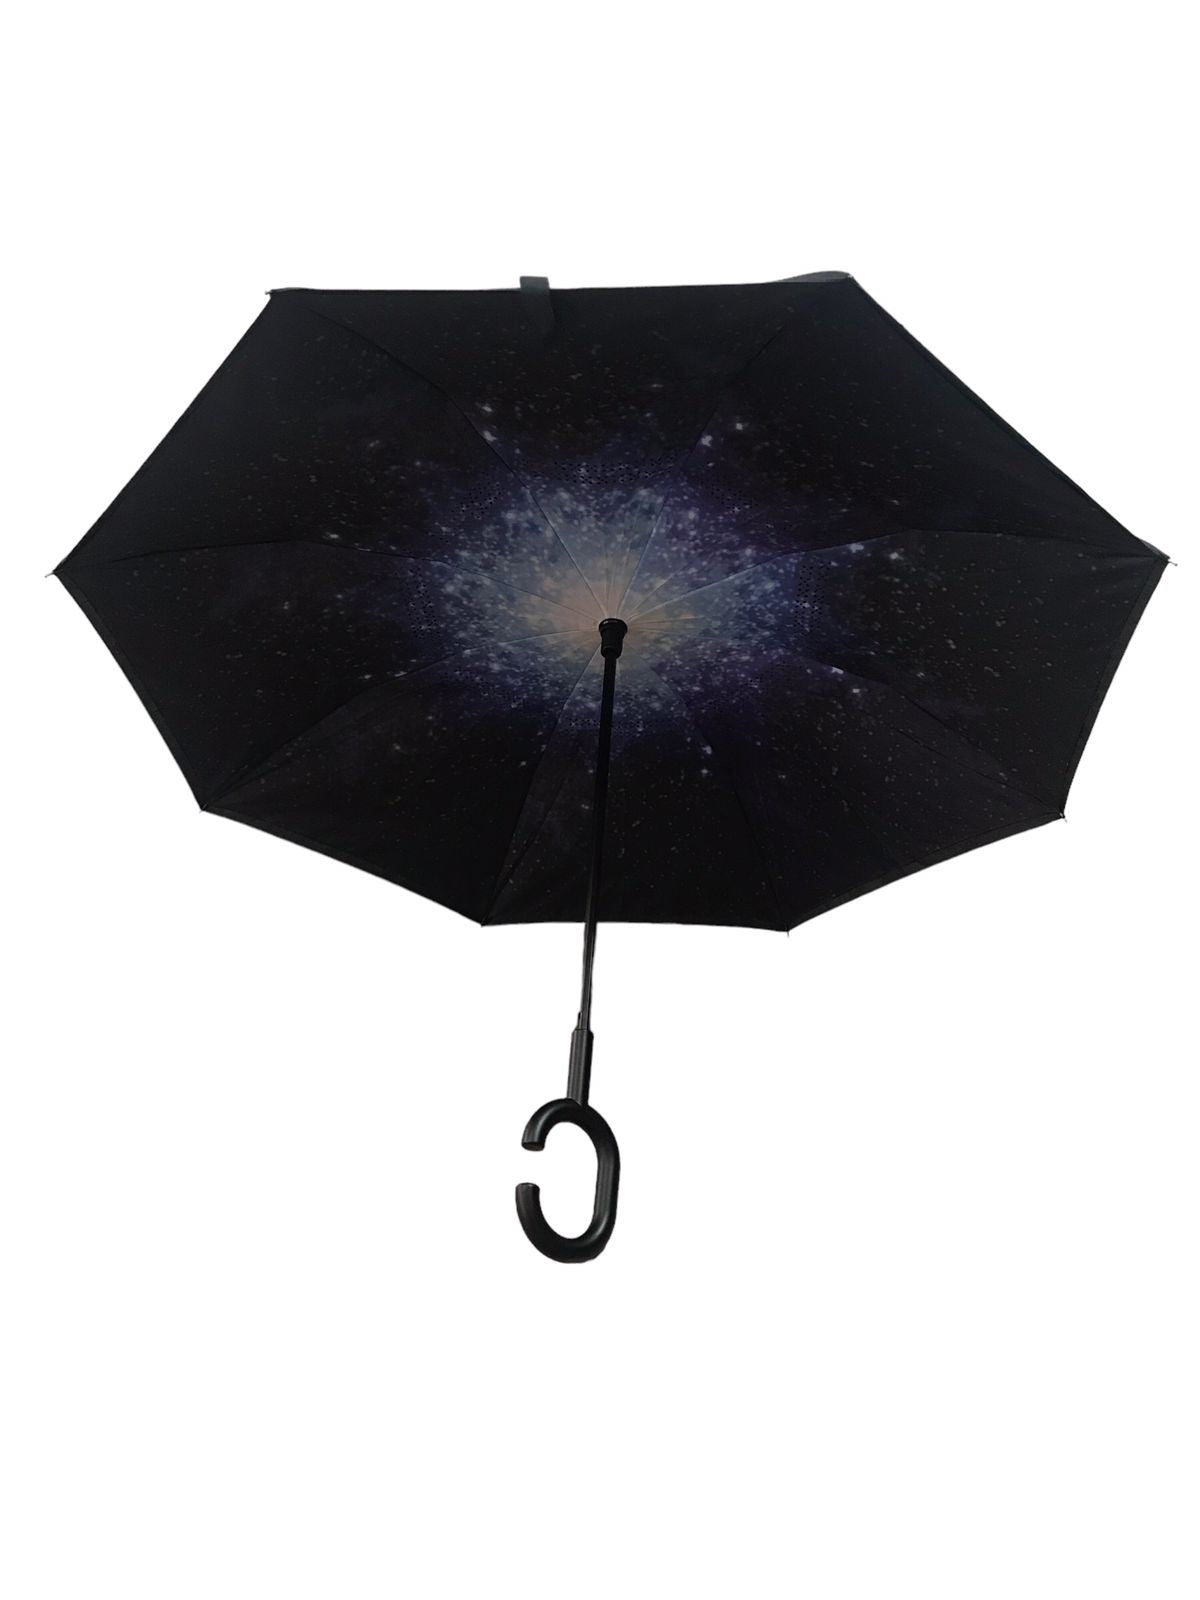 Paraguas doble vista con diseño interior Cielo Azul / Constelación